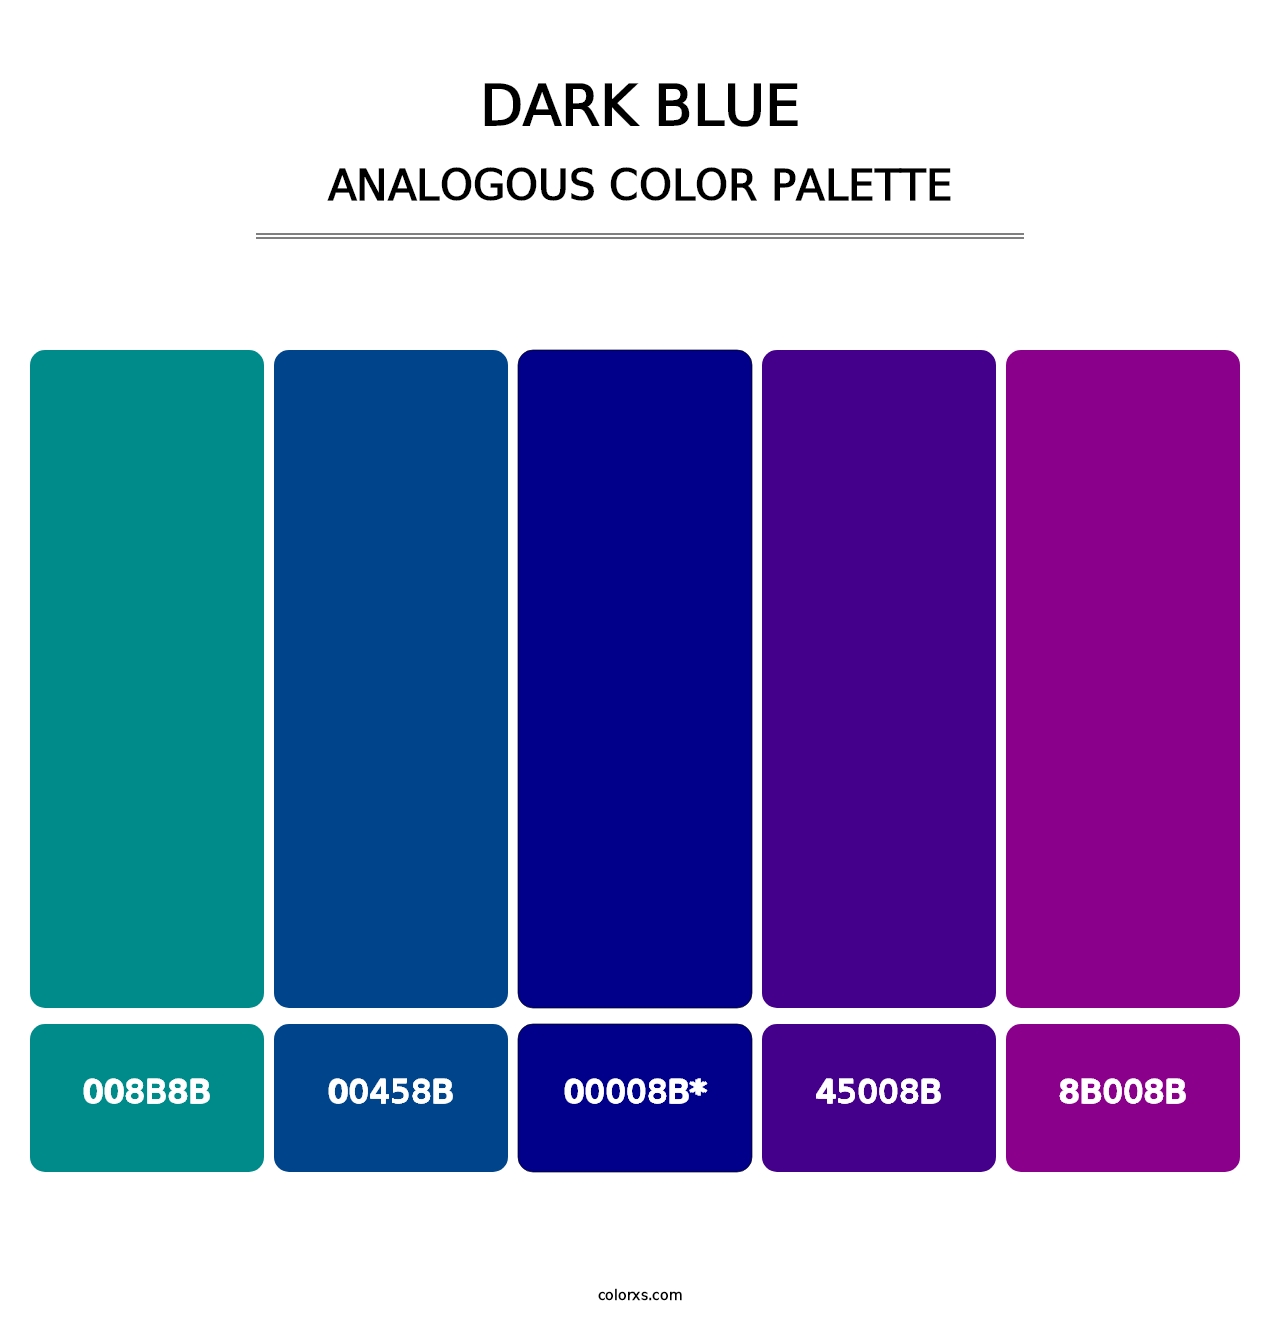 Dark Blue - Analogous Color Palette